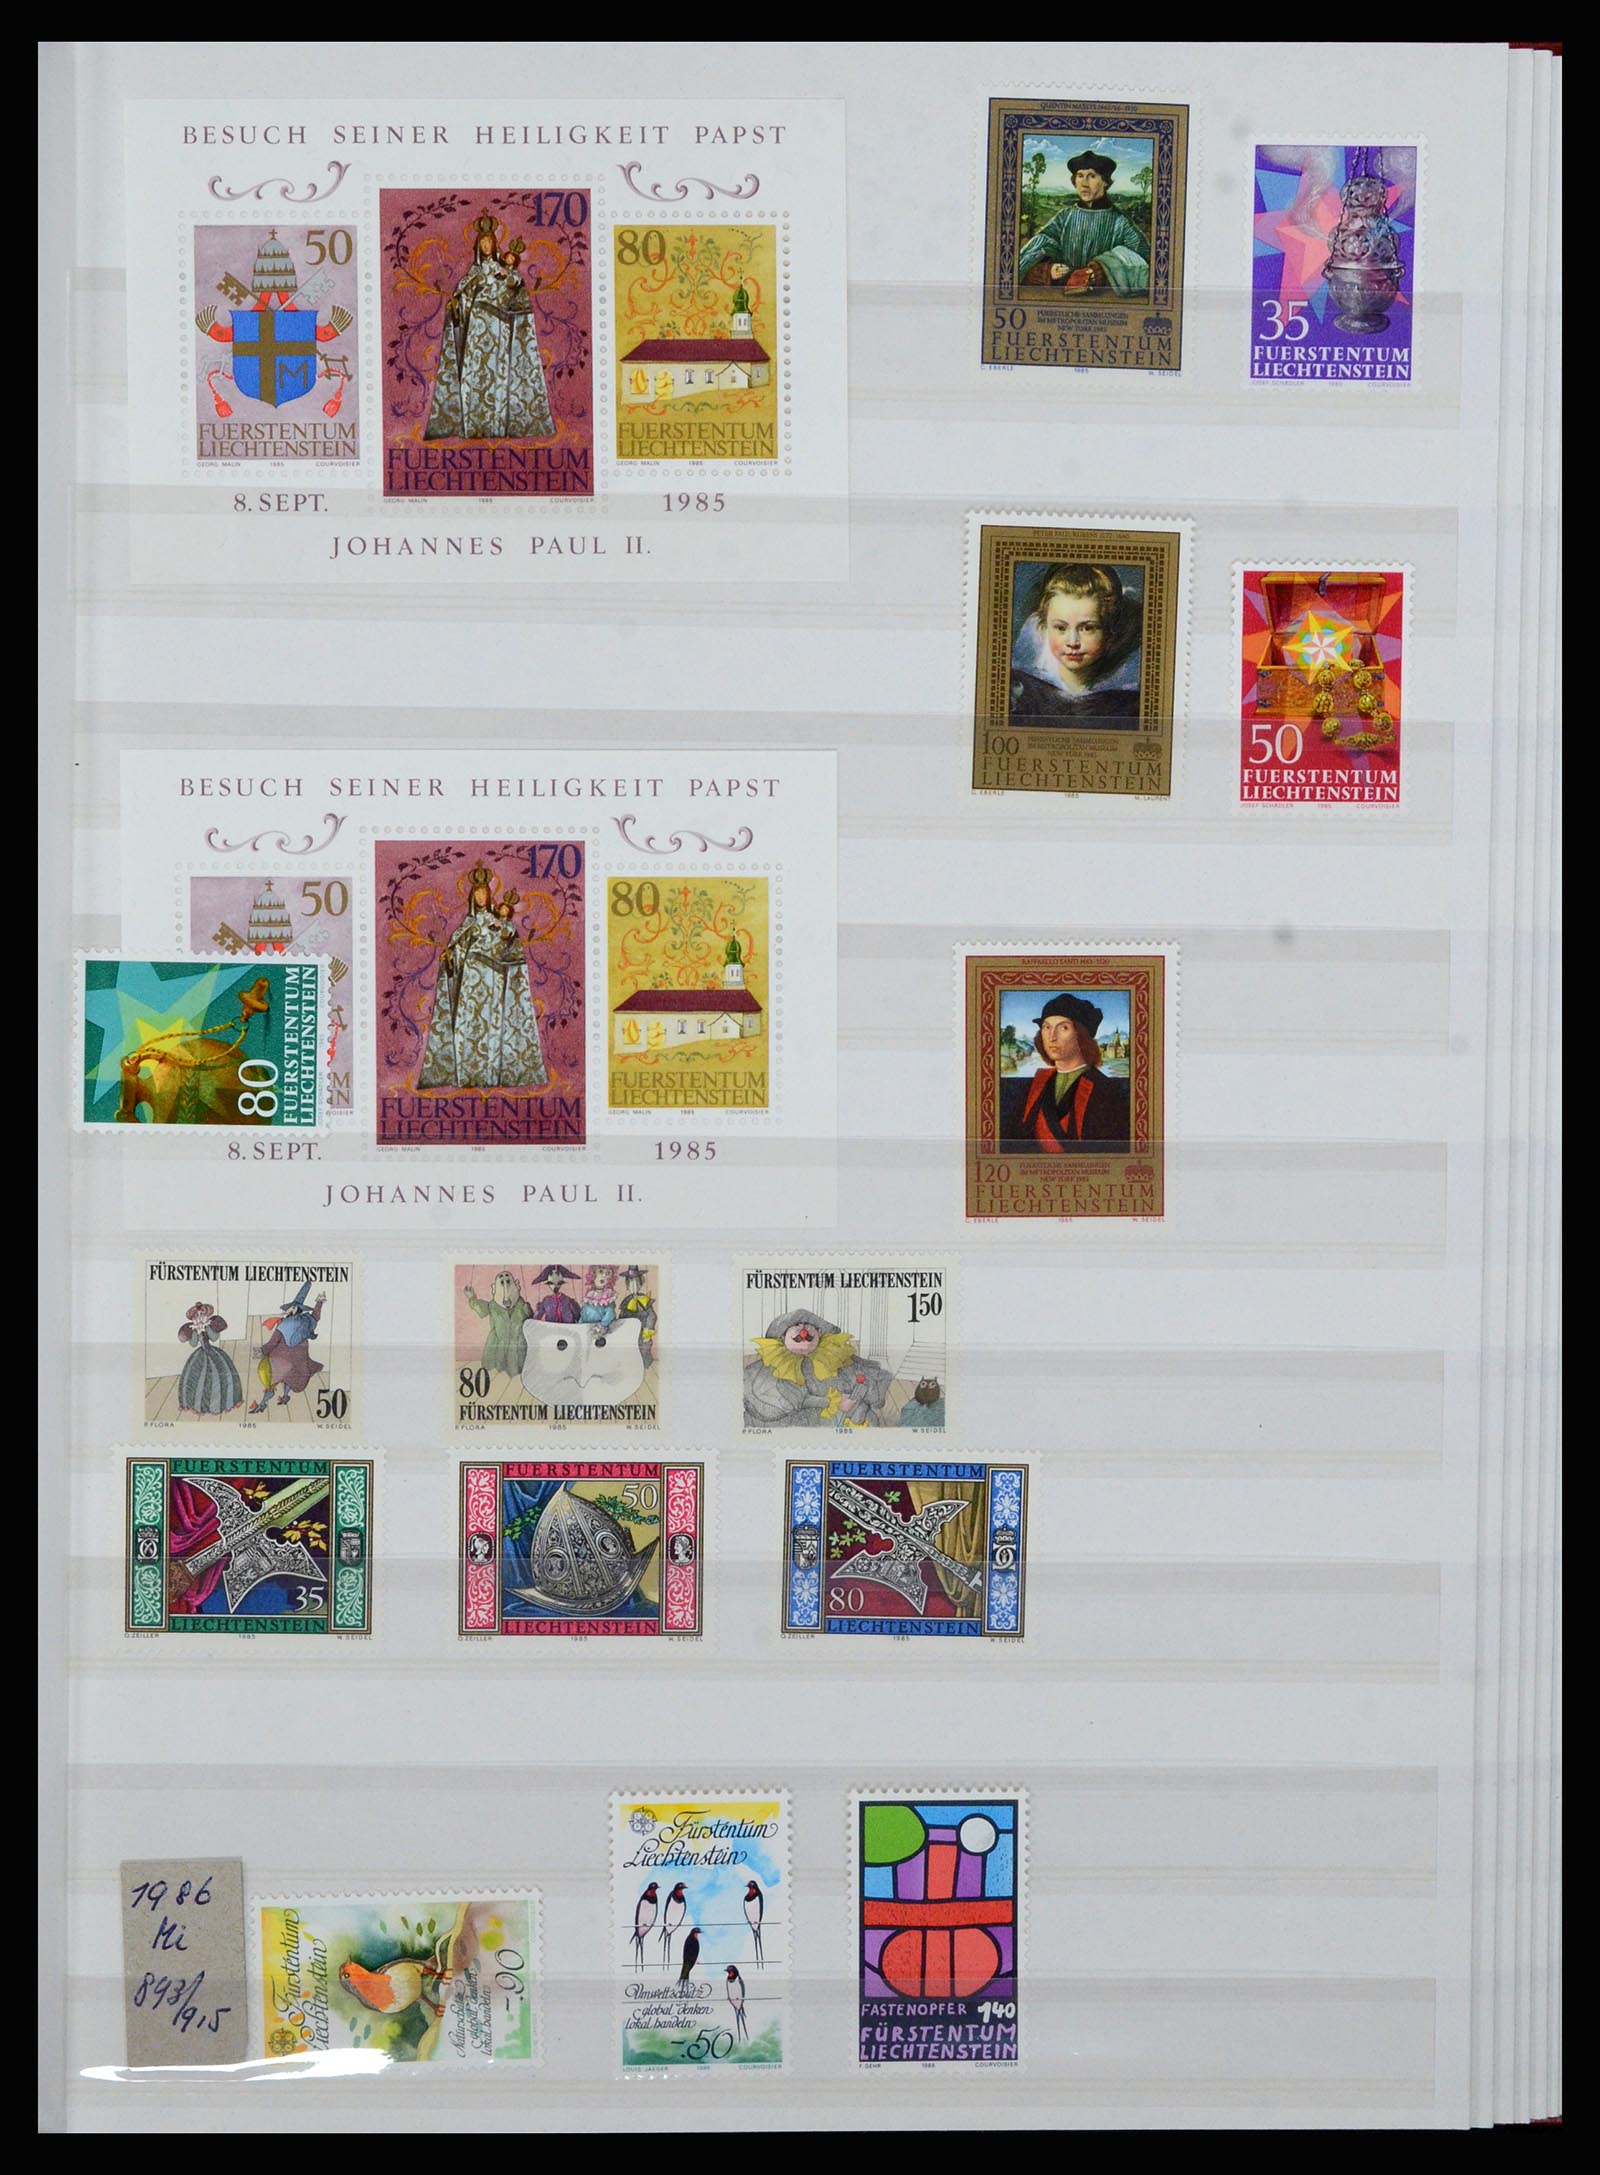 36899 038 - Stamp collection 36899 Liechtenstein 1930-2005.